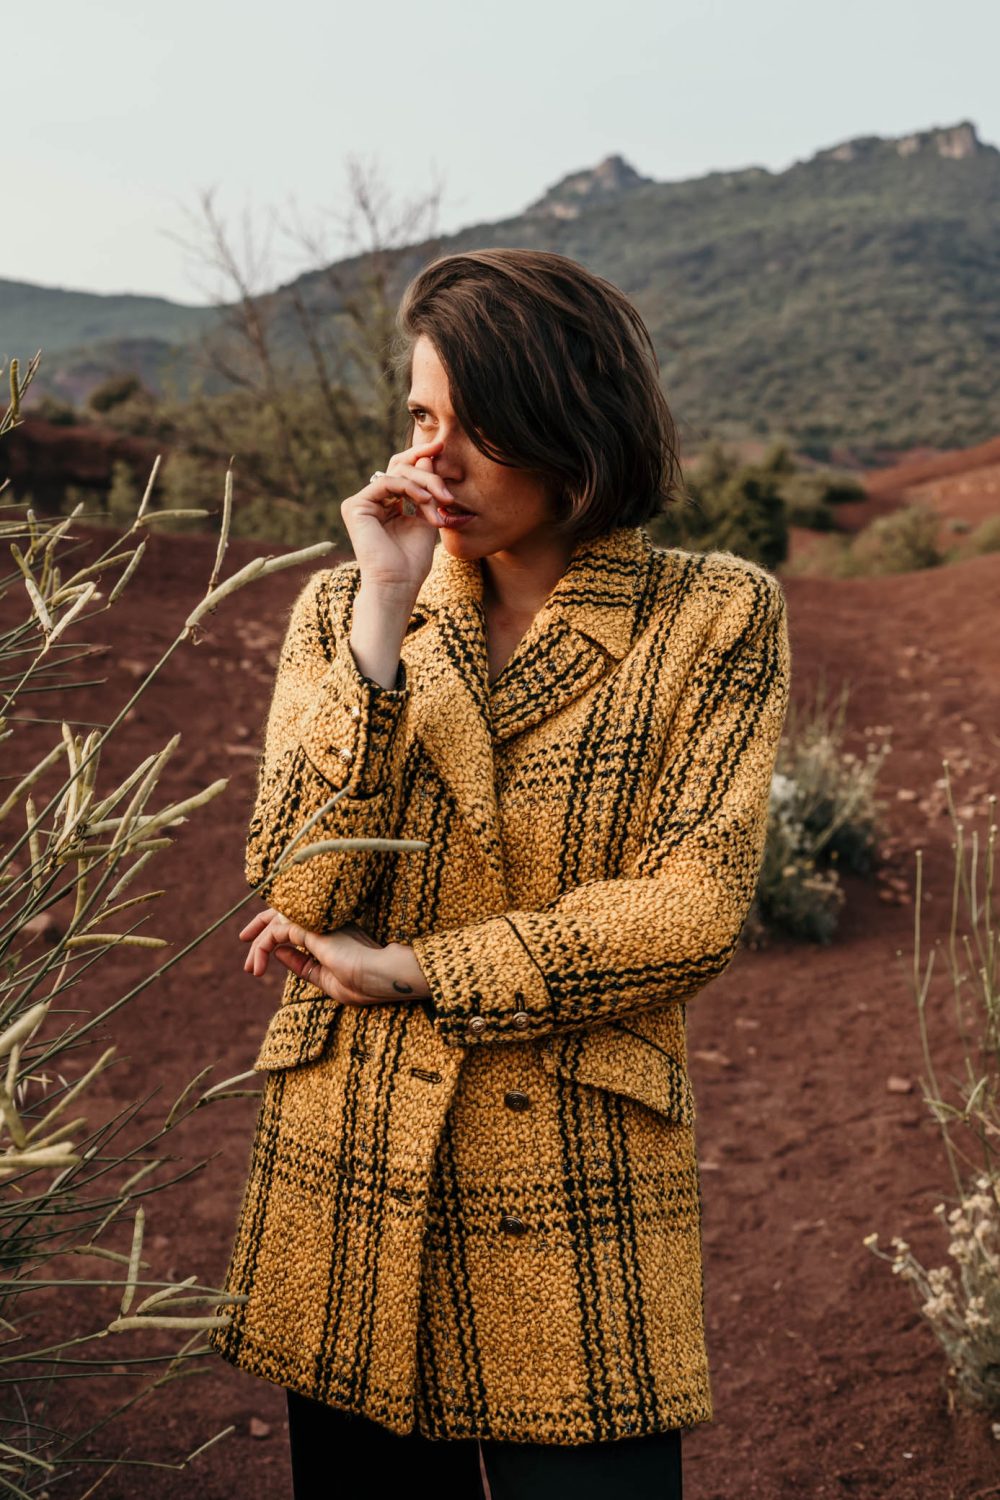 manteau femme fabrication française en laine et entièrement doublé en satin acétate pour un plus grand confort. Très élégant.